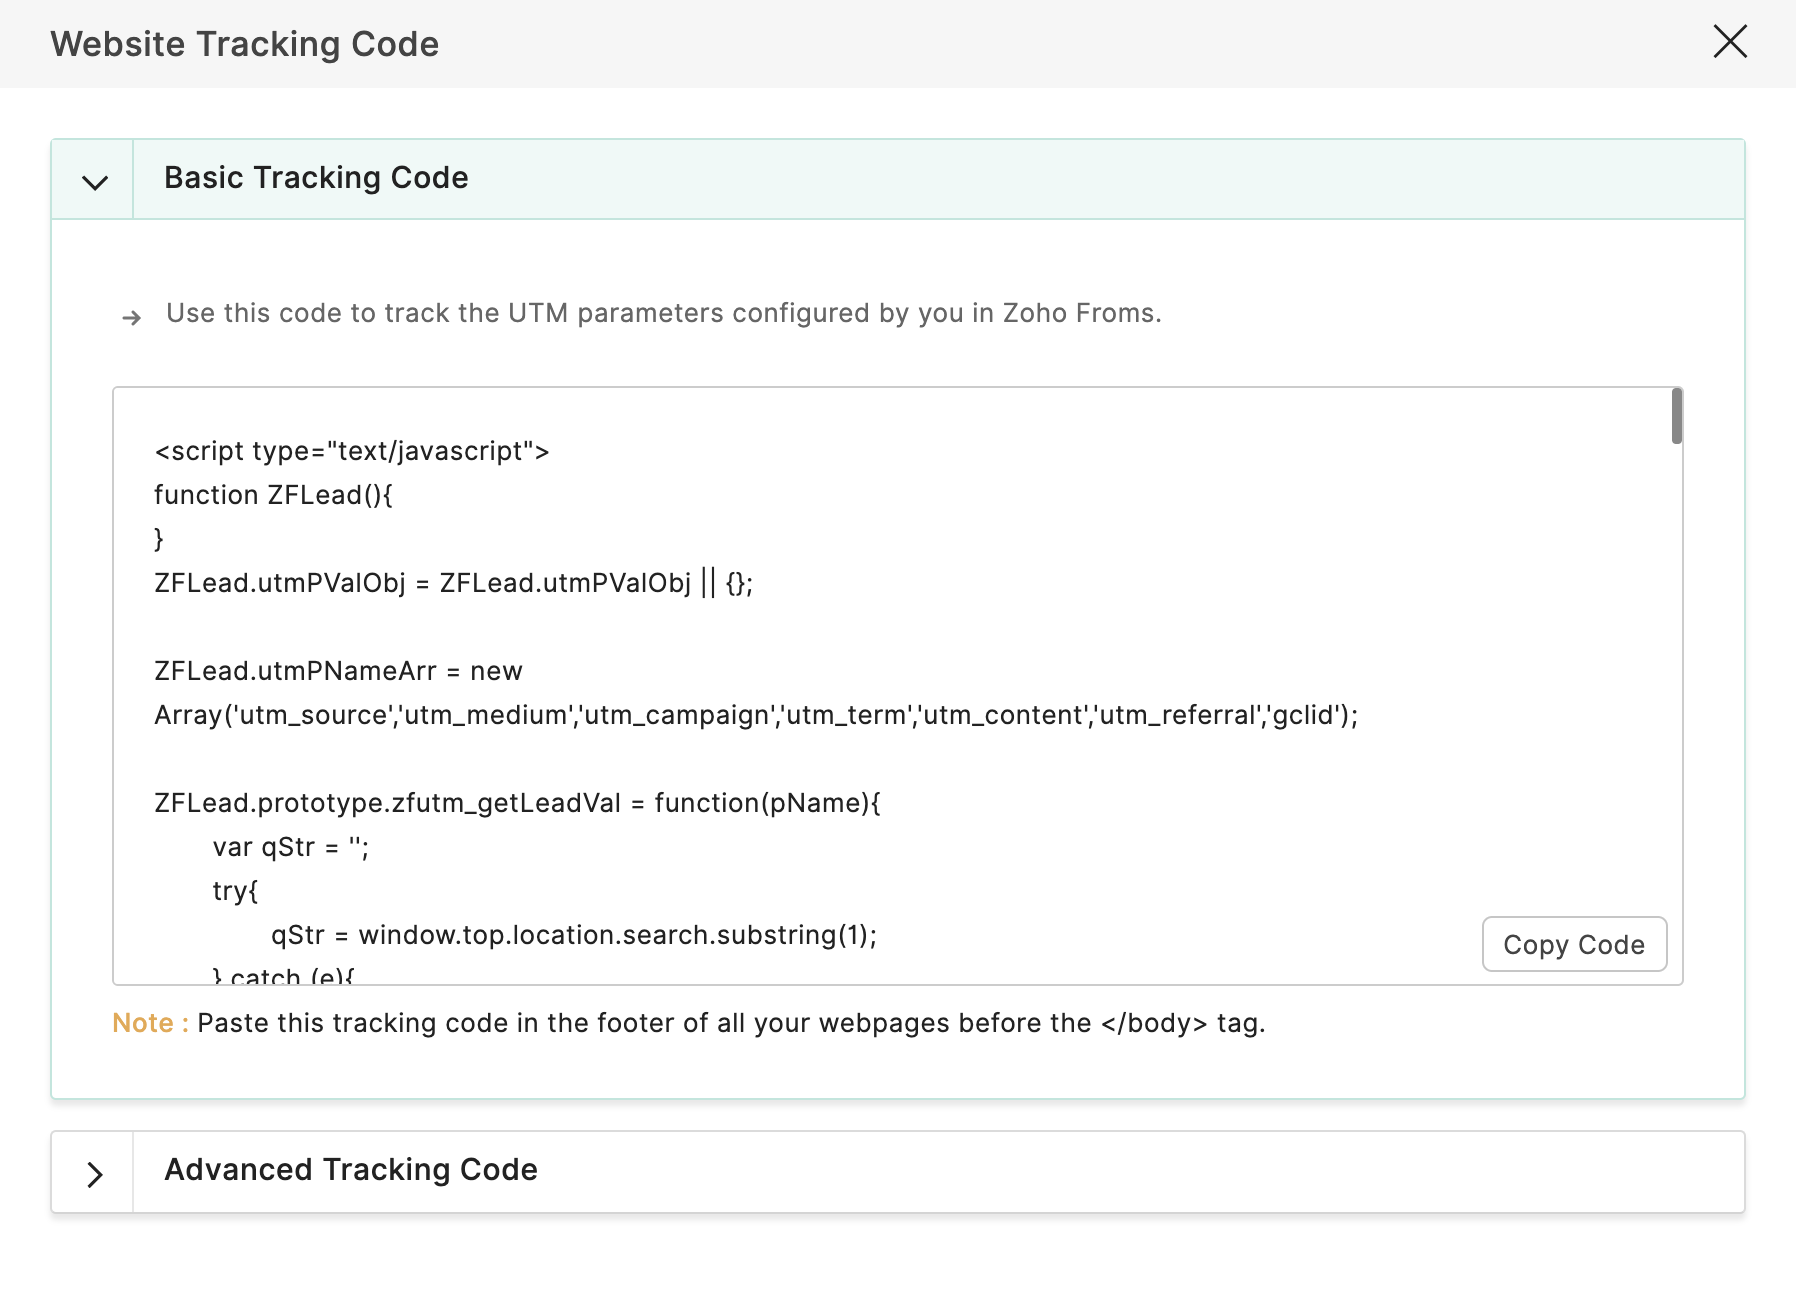 Basic Tracking Code